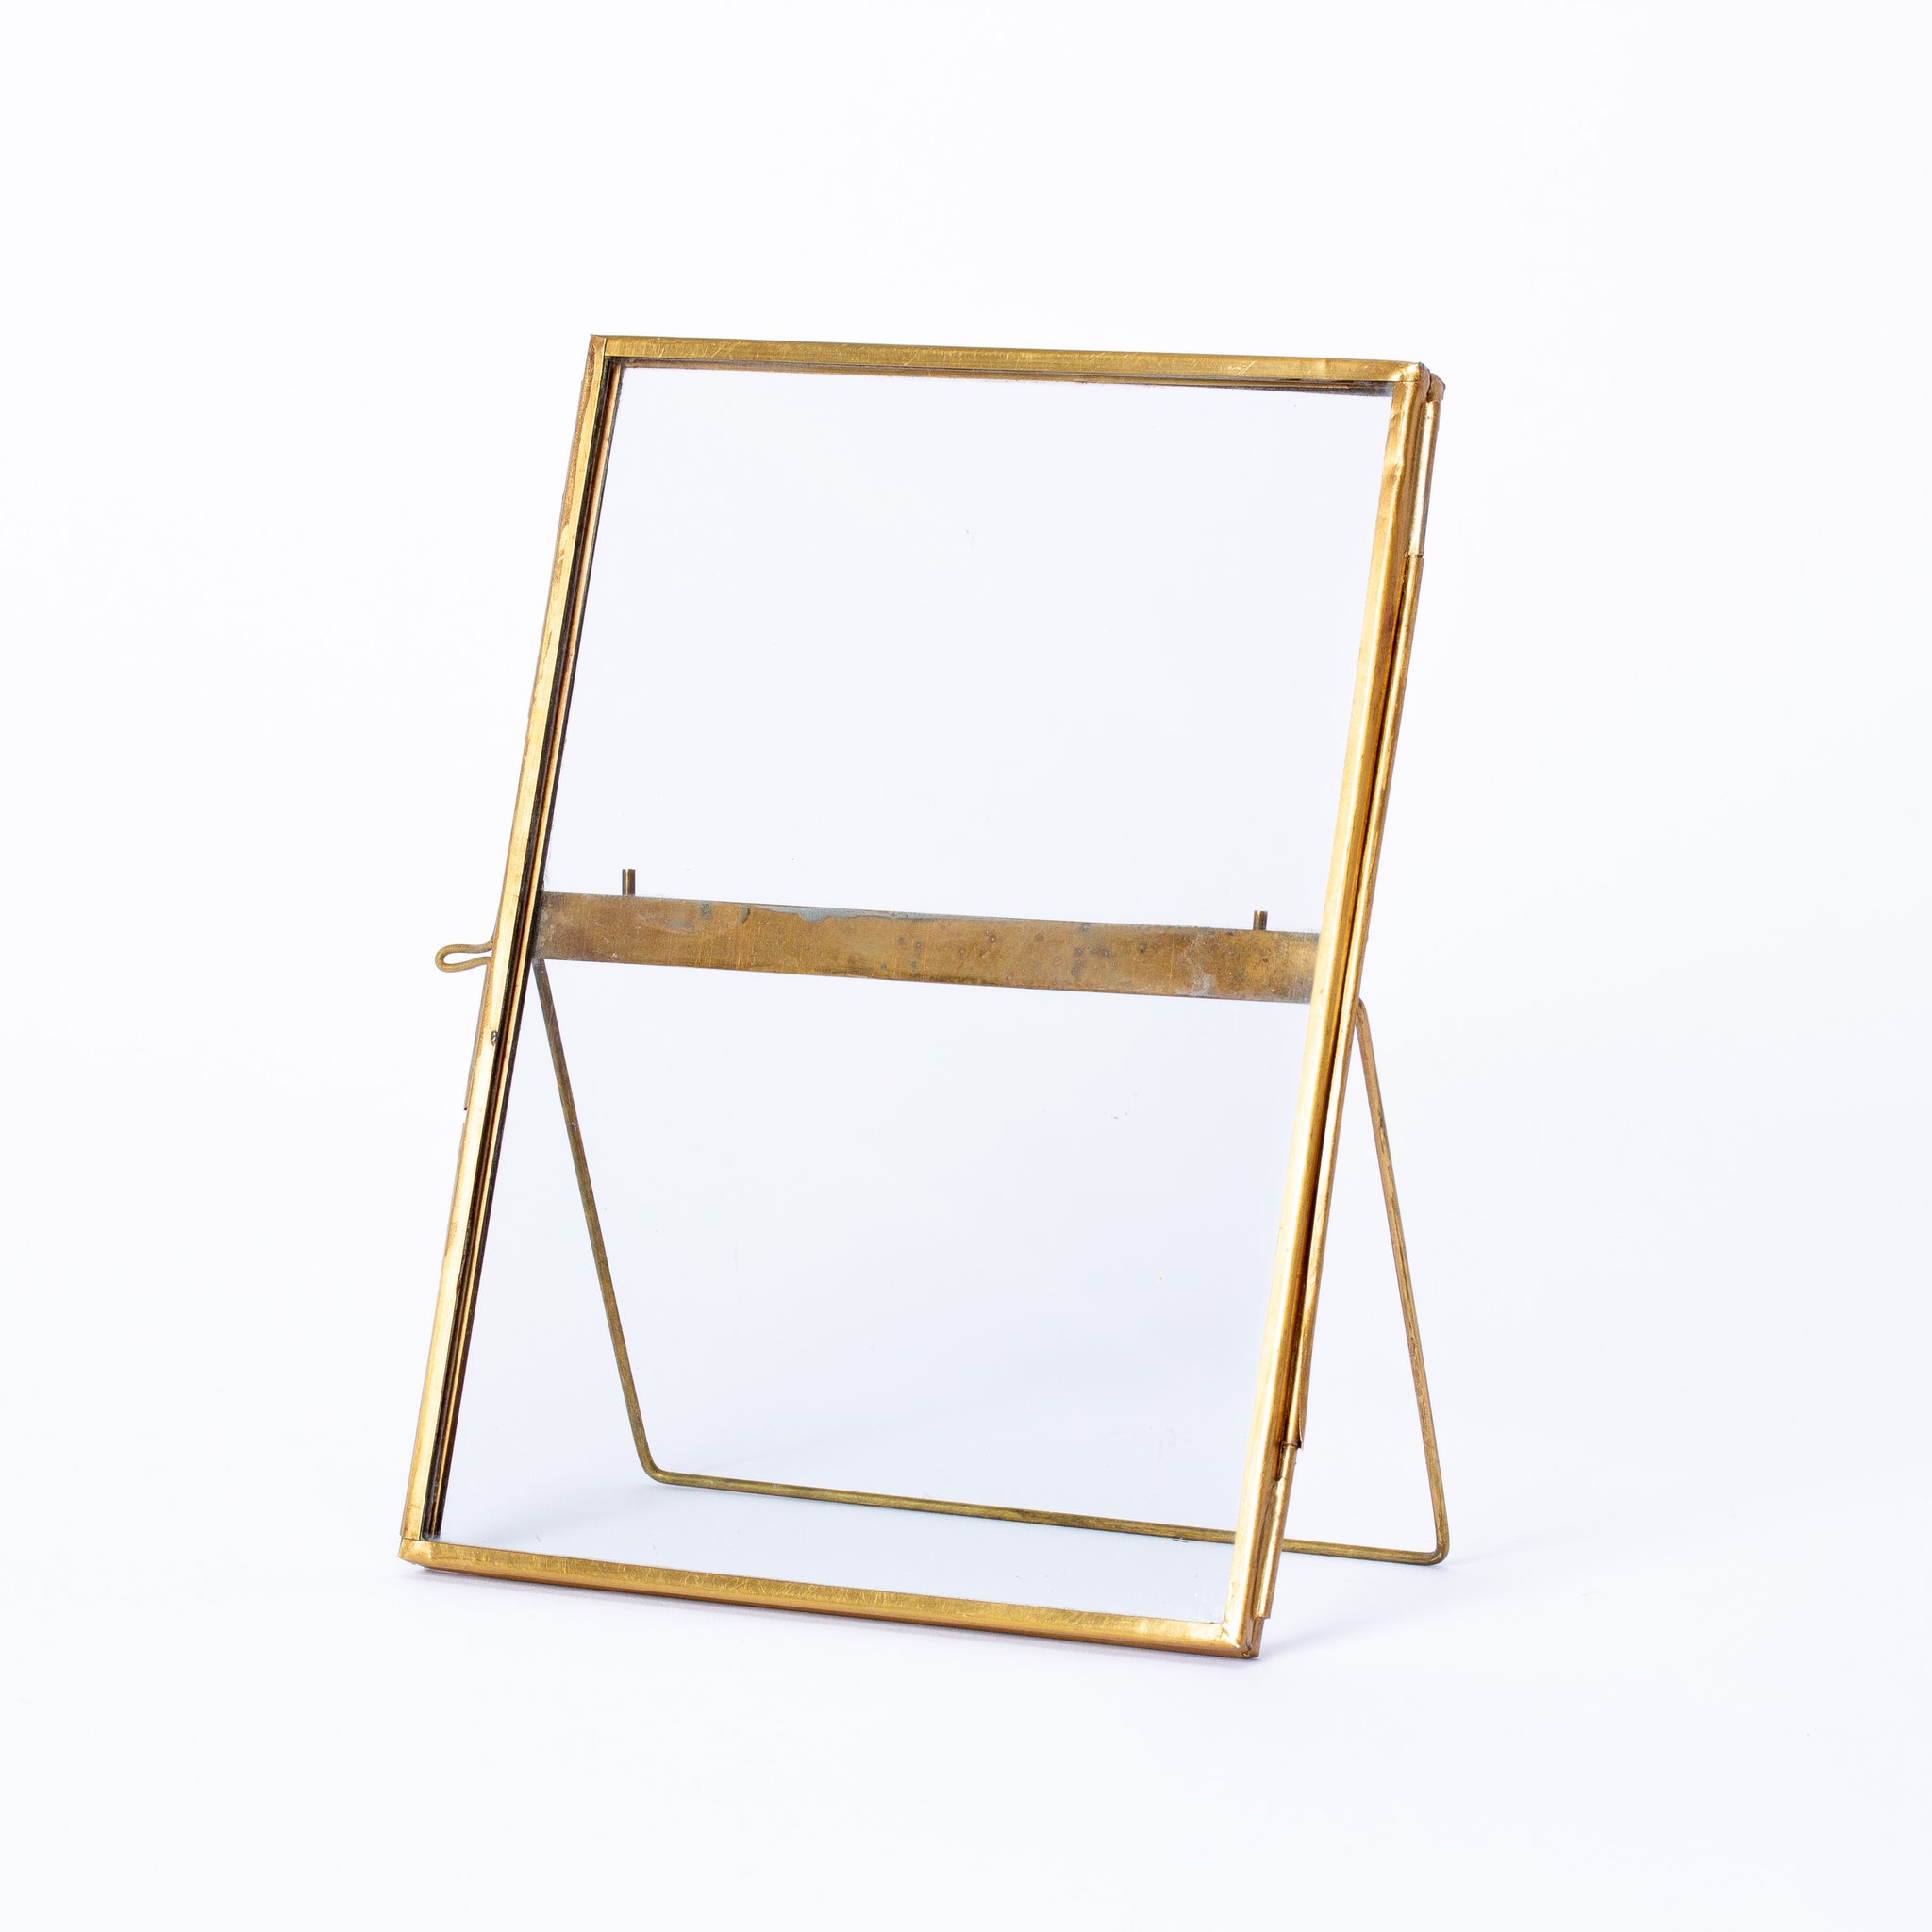 Standing Brass Frame - 18 x 13cm